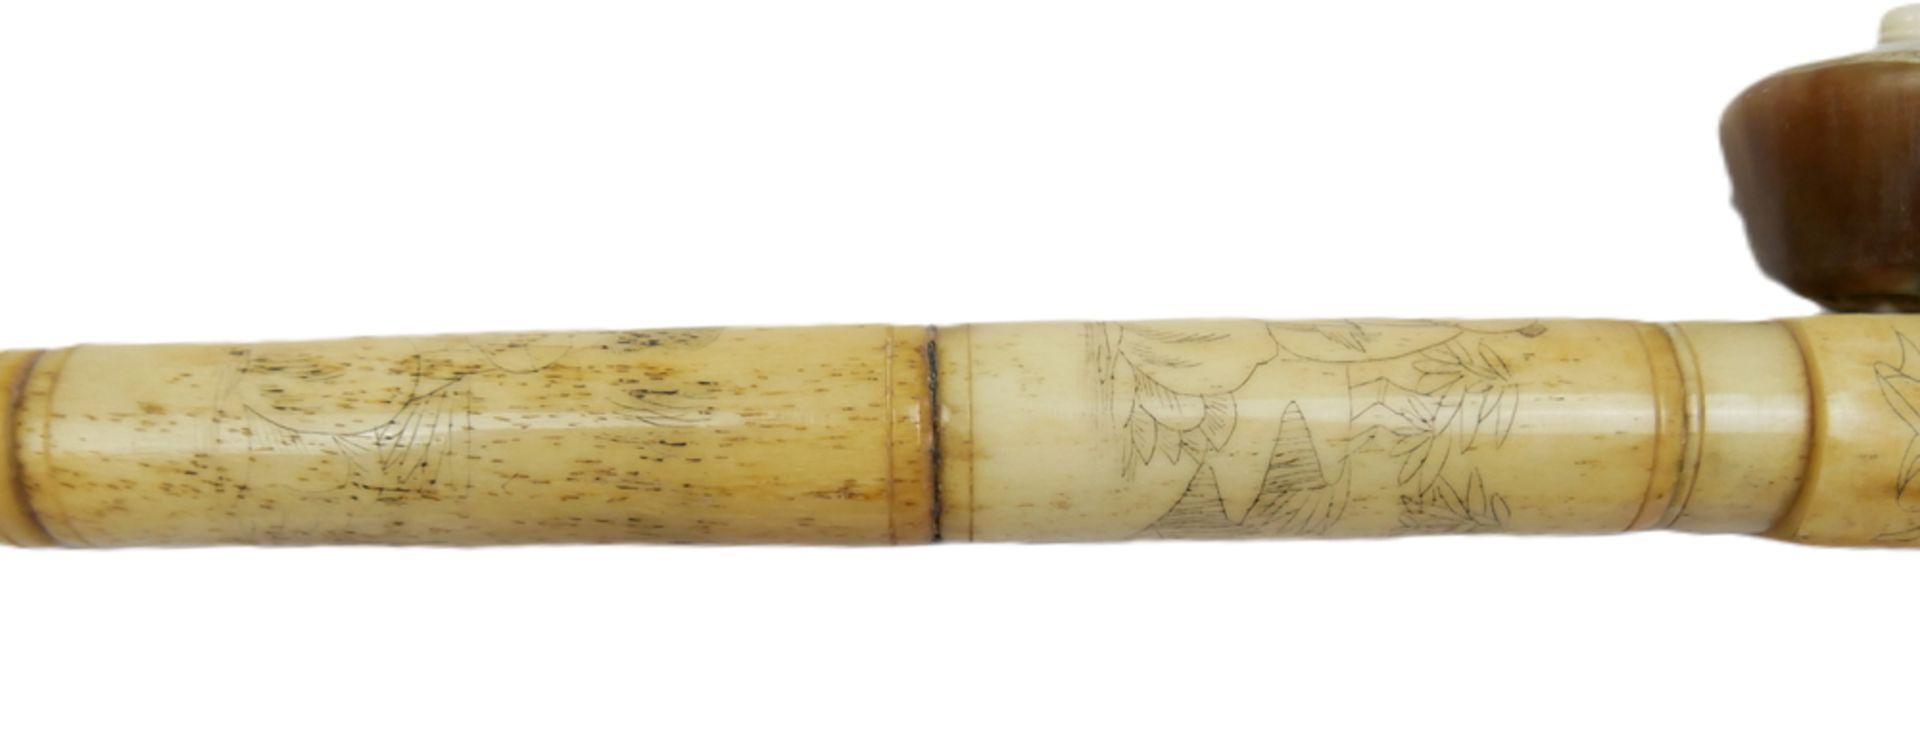 Chinesische Opiumpfeife aus Knochen, geschnitzt und verziert mit Geishas und Landschaften. Länge ca. - Bild 2 aus 3